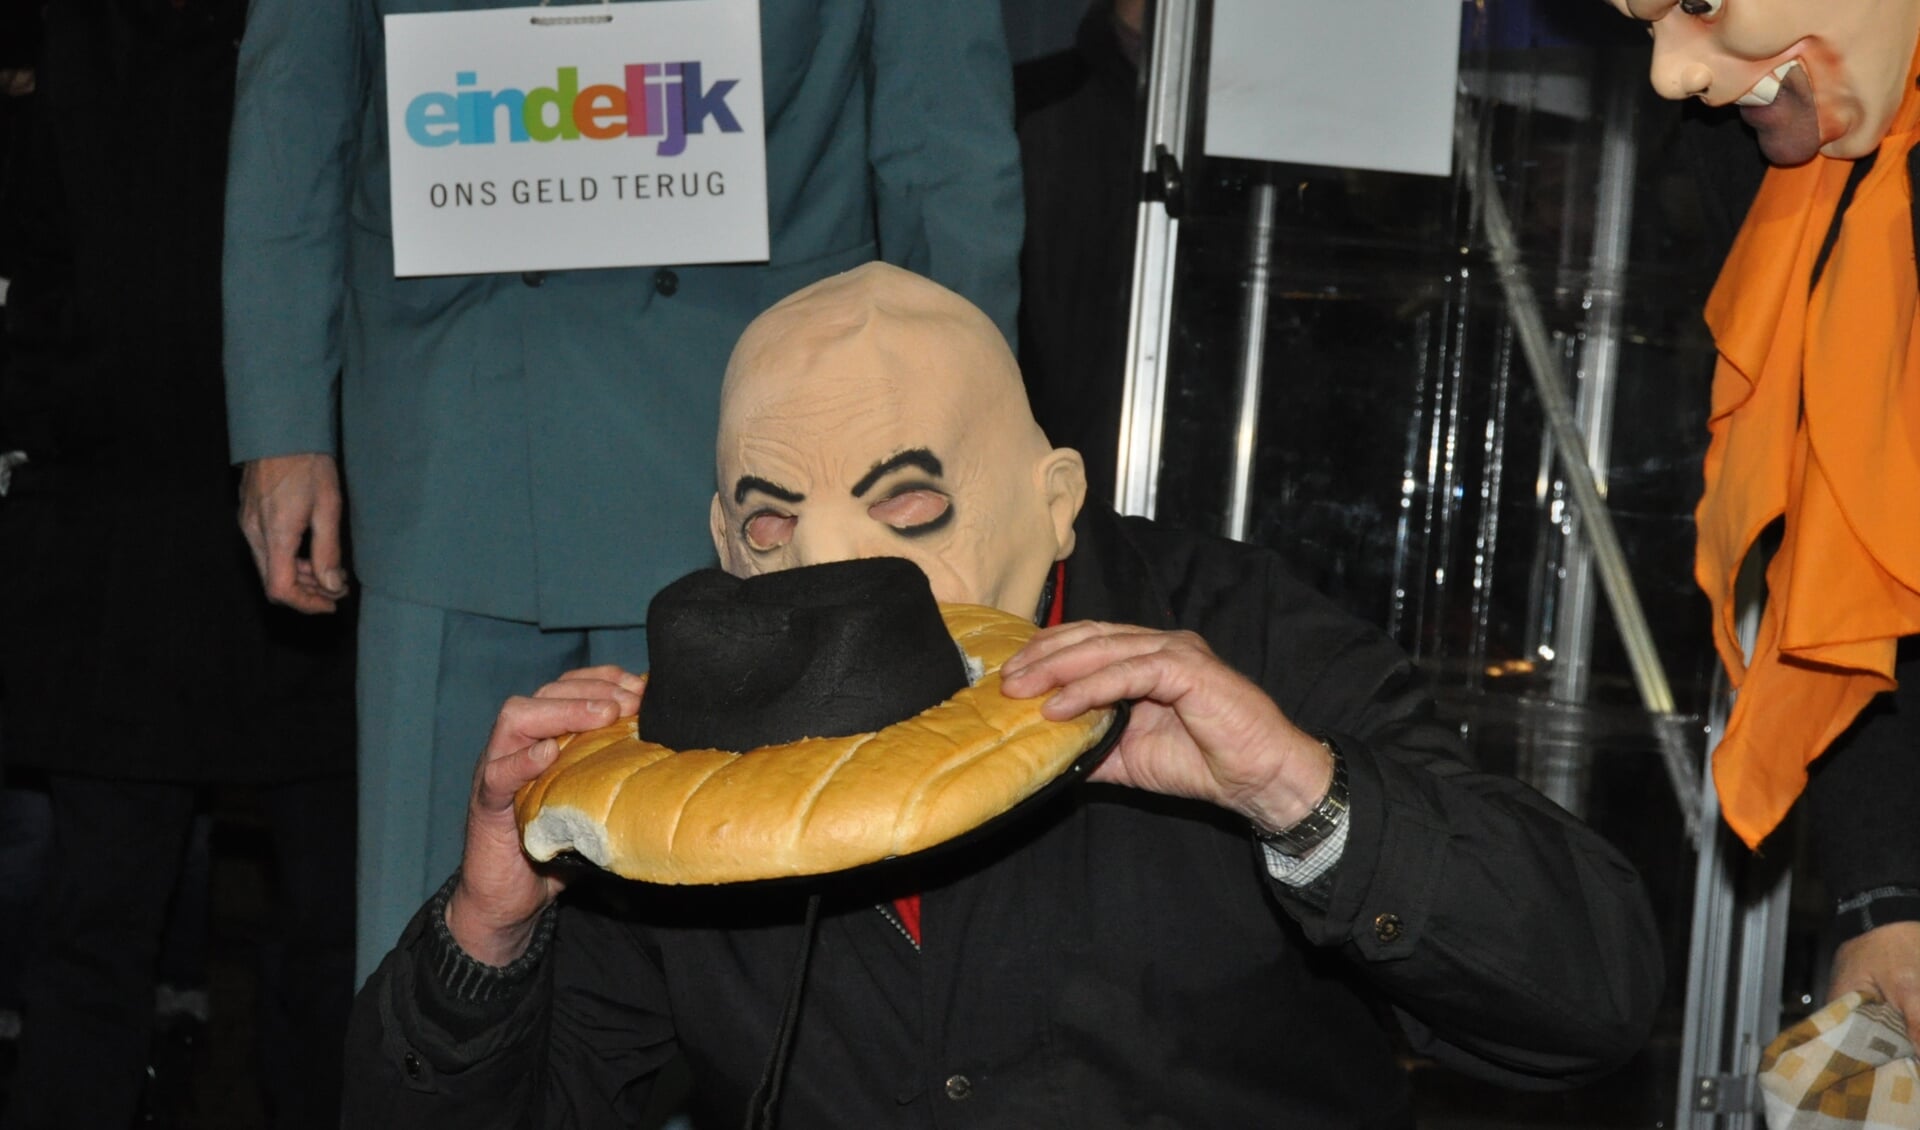 Nadat al het geld van Landsbanki terug is uit IJsland komt Gerbrand Poster zijn belofte na en eet alsnog zijn hoed op. Hij is wel taai.